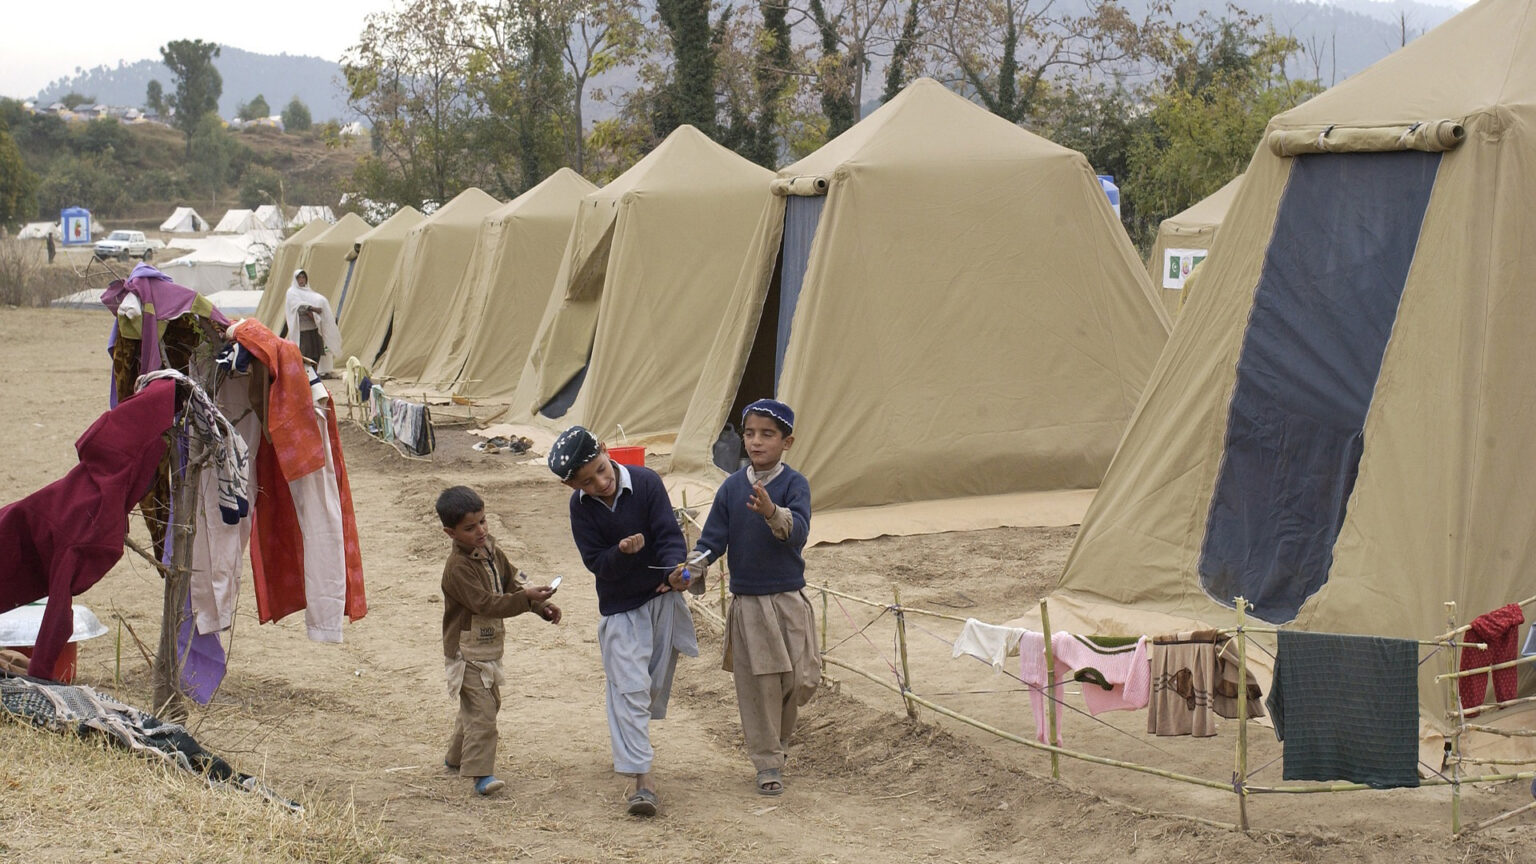 Acampamento_refugiados_Paquistao-1536x864.jpg